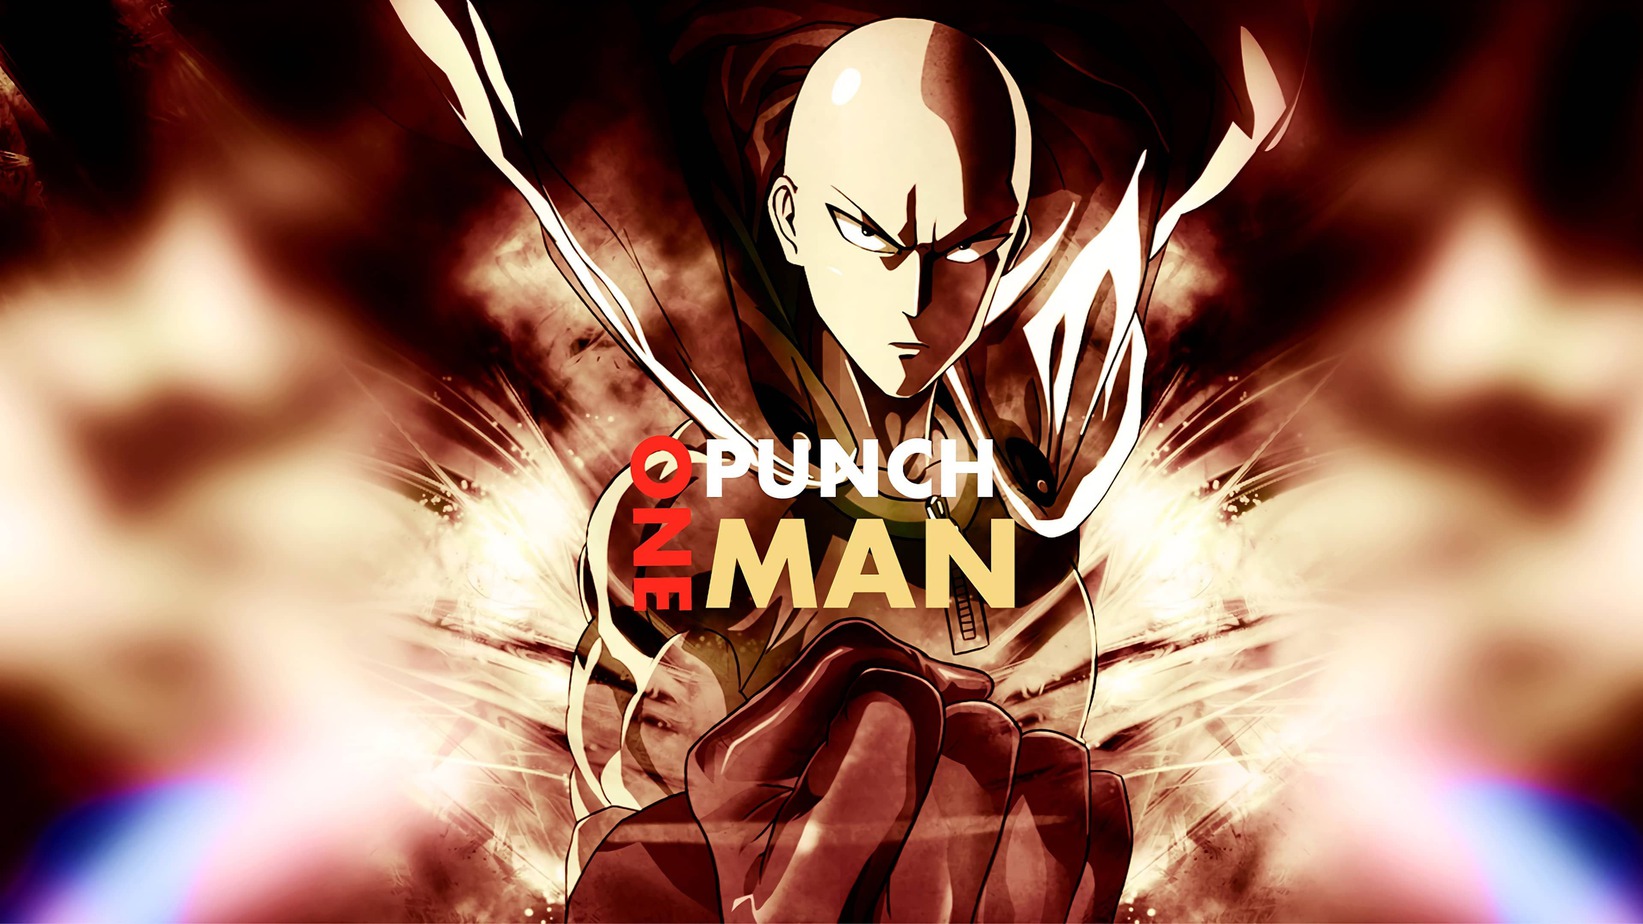 One punch man - el personaje de anime más poderoso